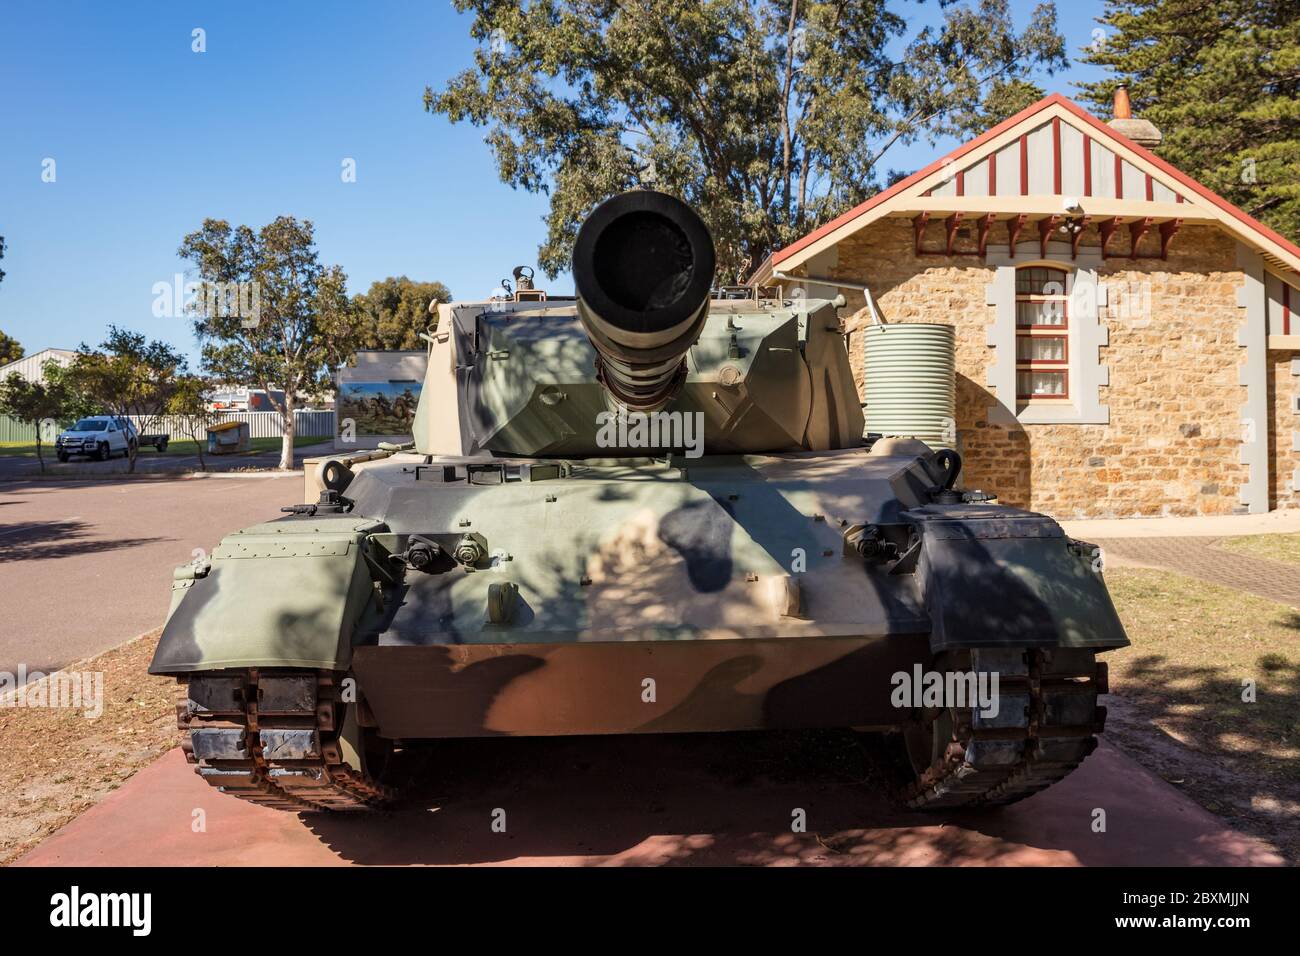 Esperance Australia 13 novembre 2019 : UN carro armato in pensione dell'esercito australiano di leopardo AS1 in mostra a Esperance, Australia occidentale Foto Stock